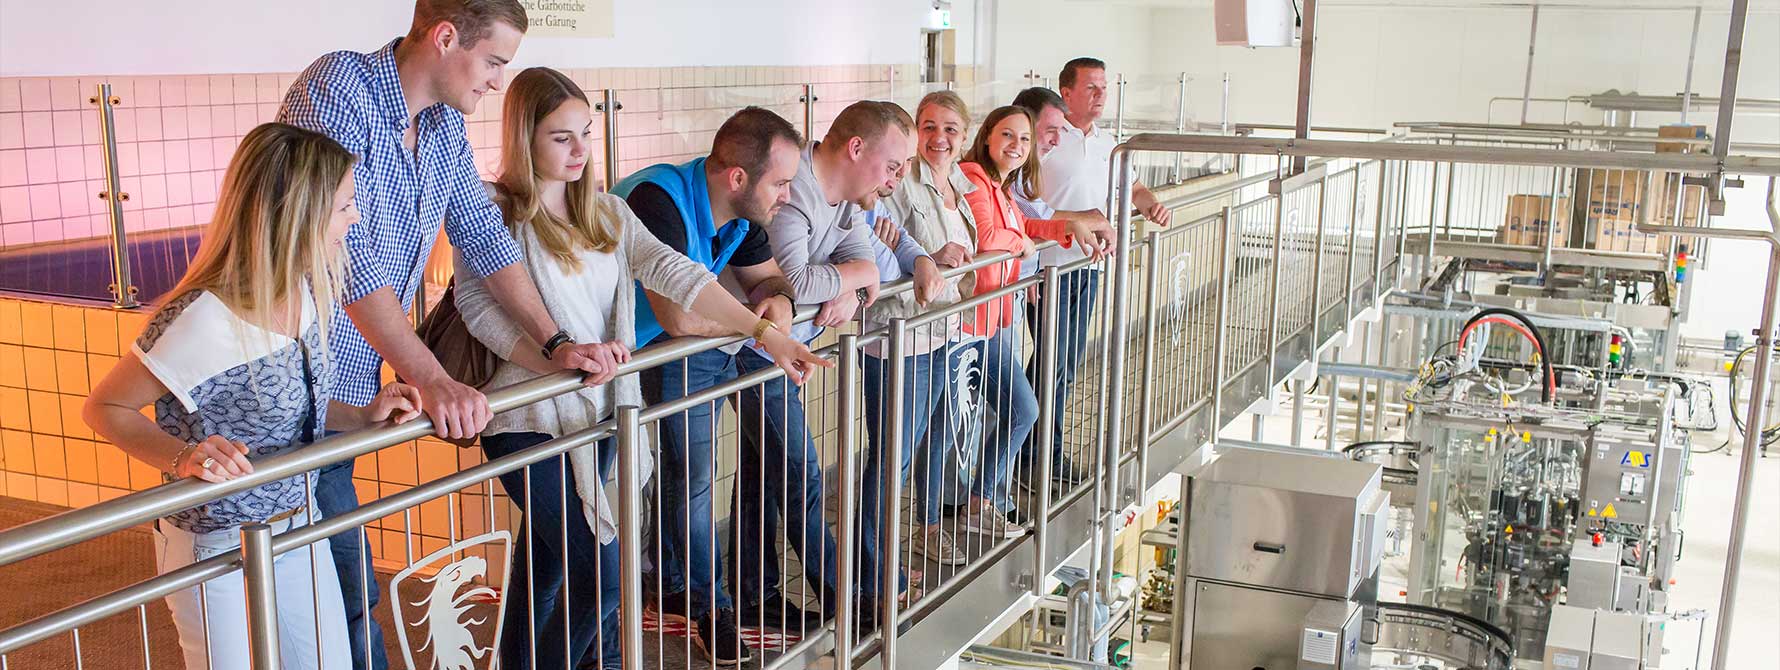 Eine Gruppe von Menschen steht während einer Brauerei-Führungen vor einem Geländer